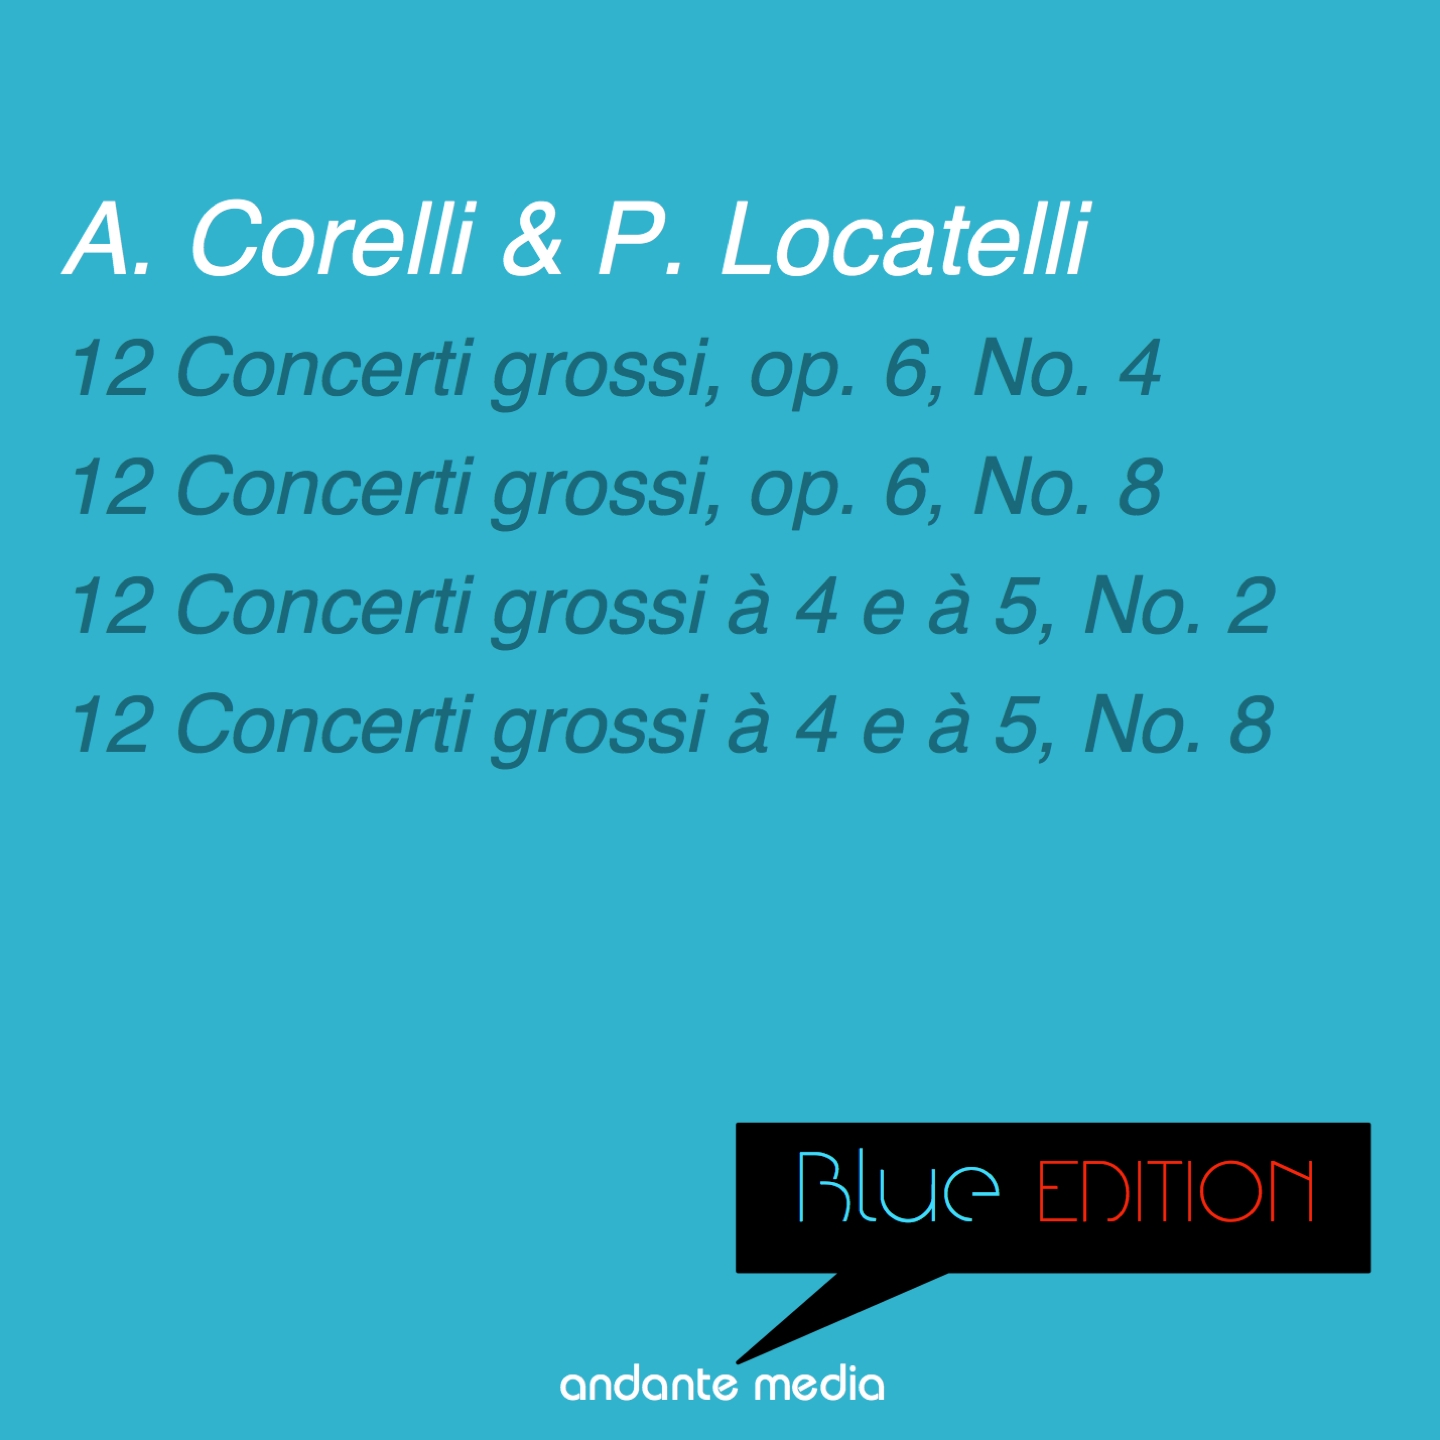 12 Concerti grossi, Op. 6, No. 4 in D Major: III. Allegro I